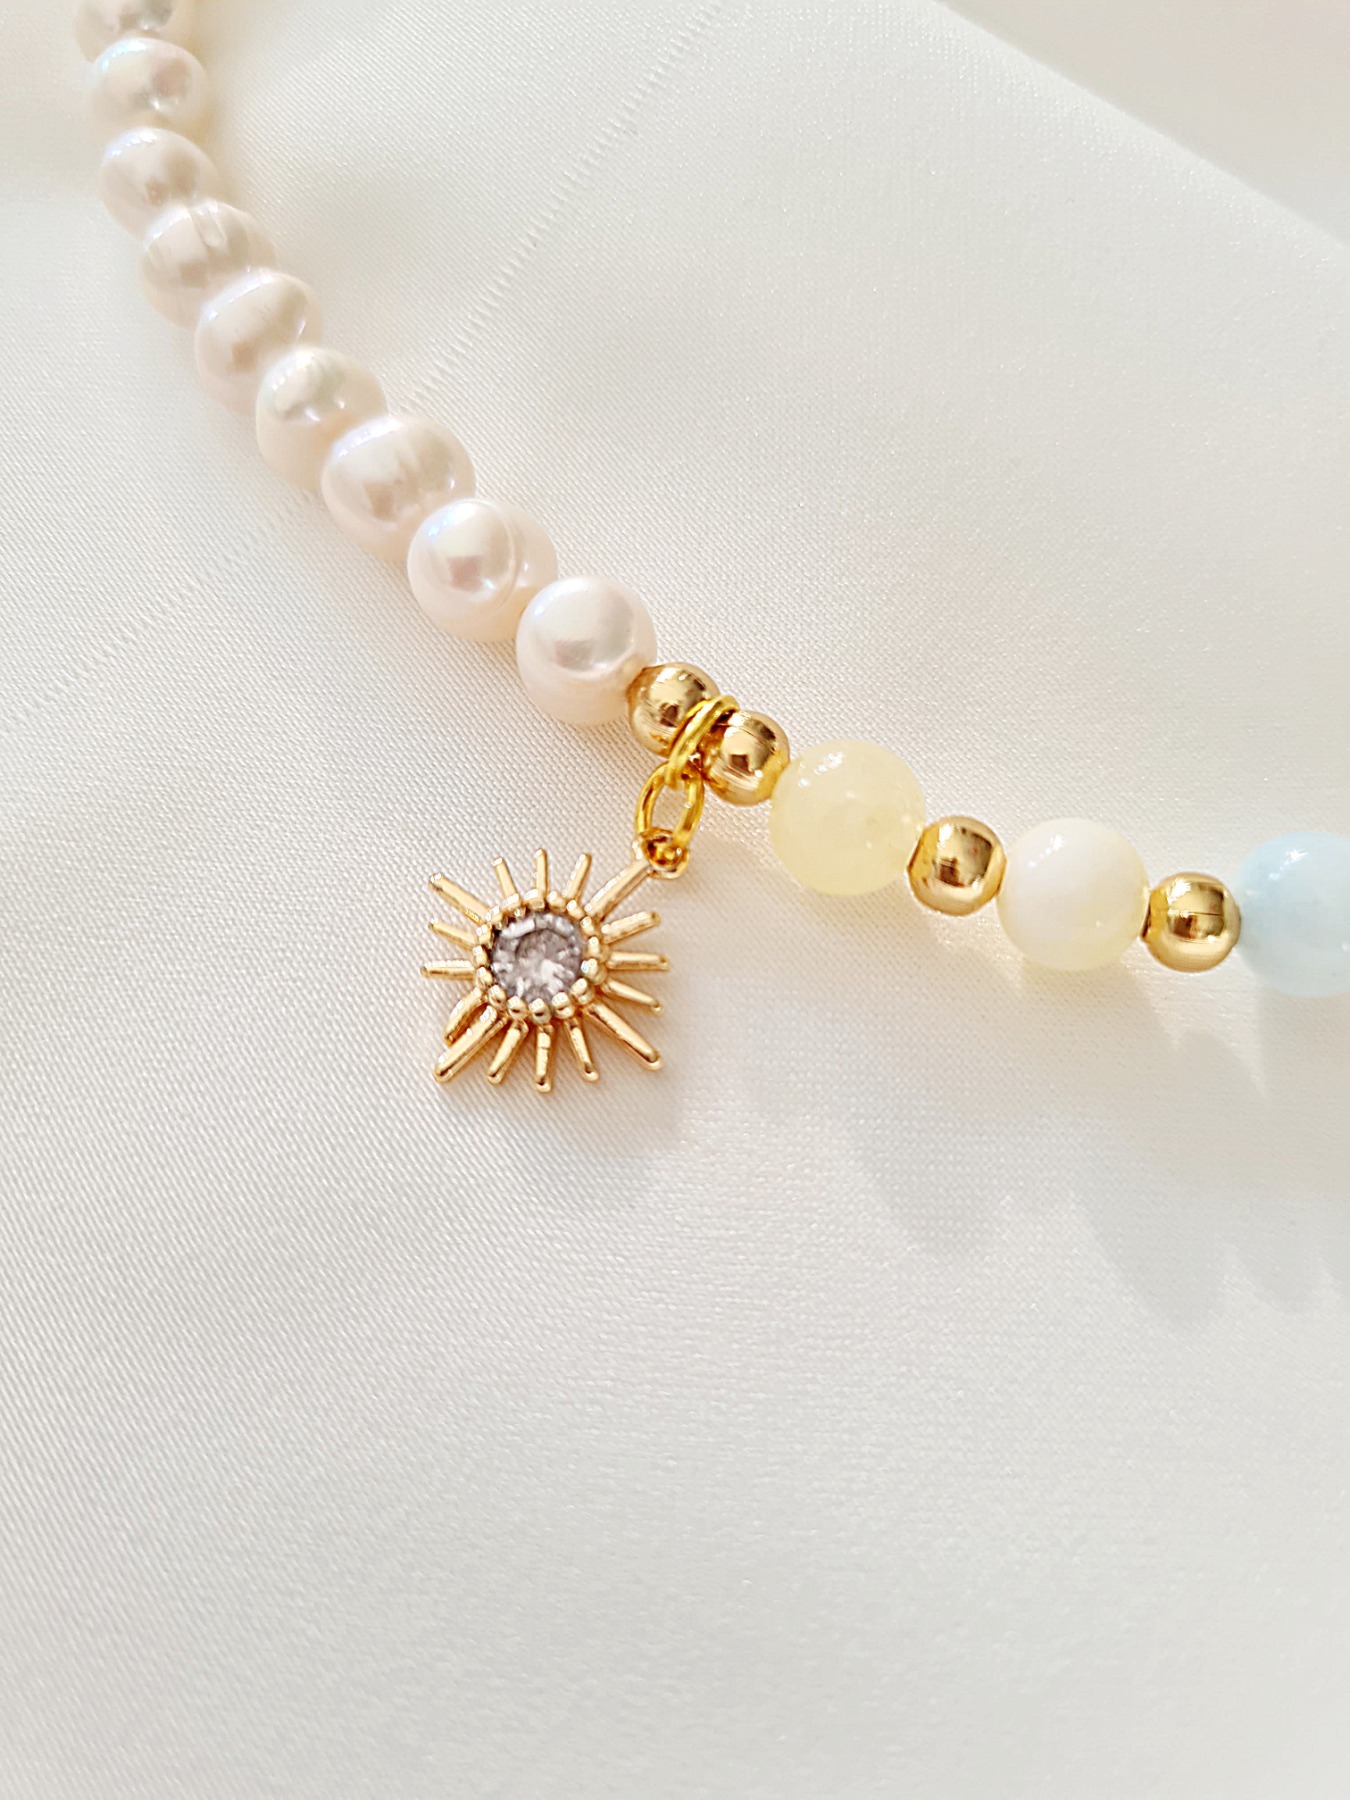 Handgefertigte Perlenkette Luxus Perlenkette einzigartige Perlenkette 7